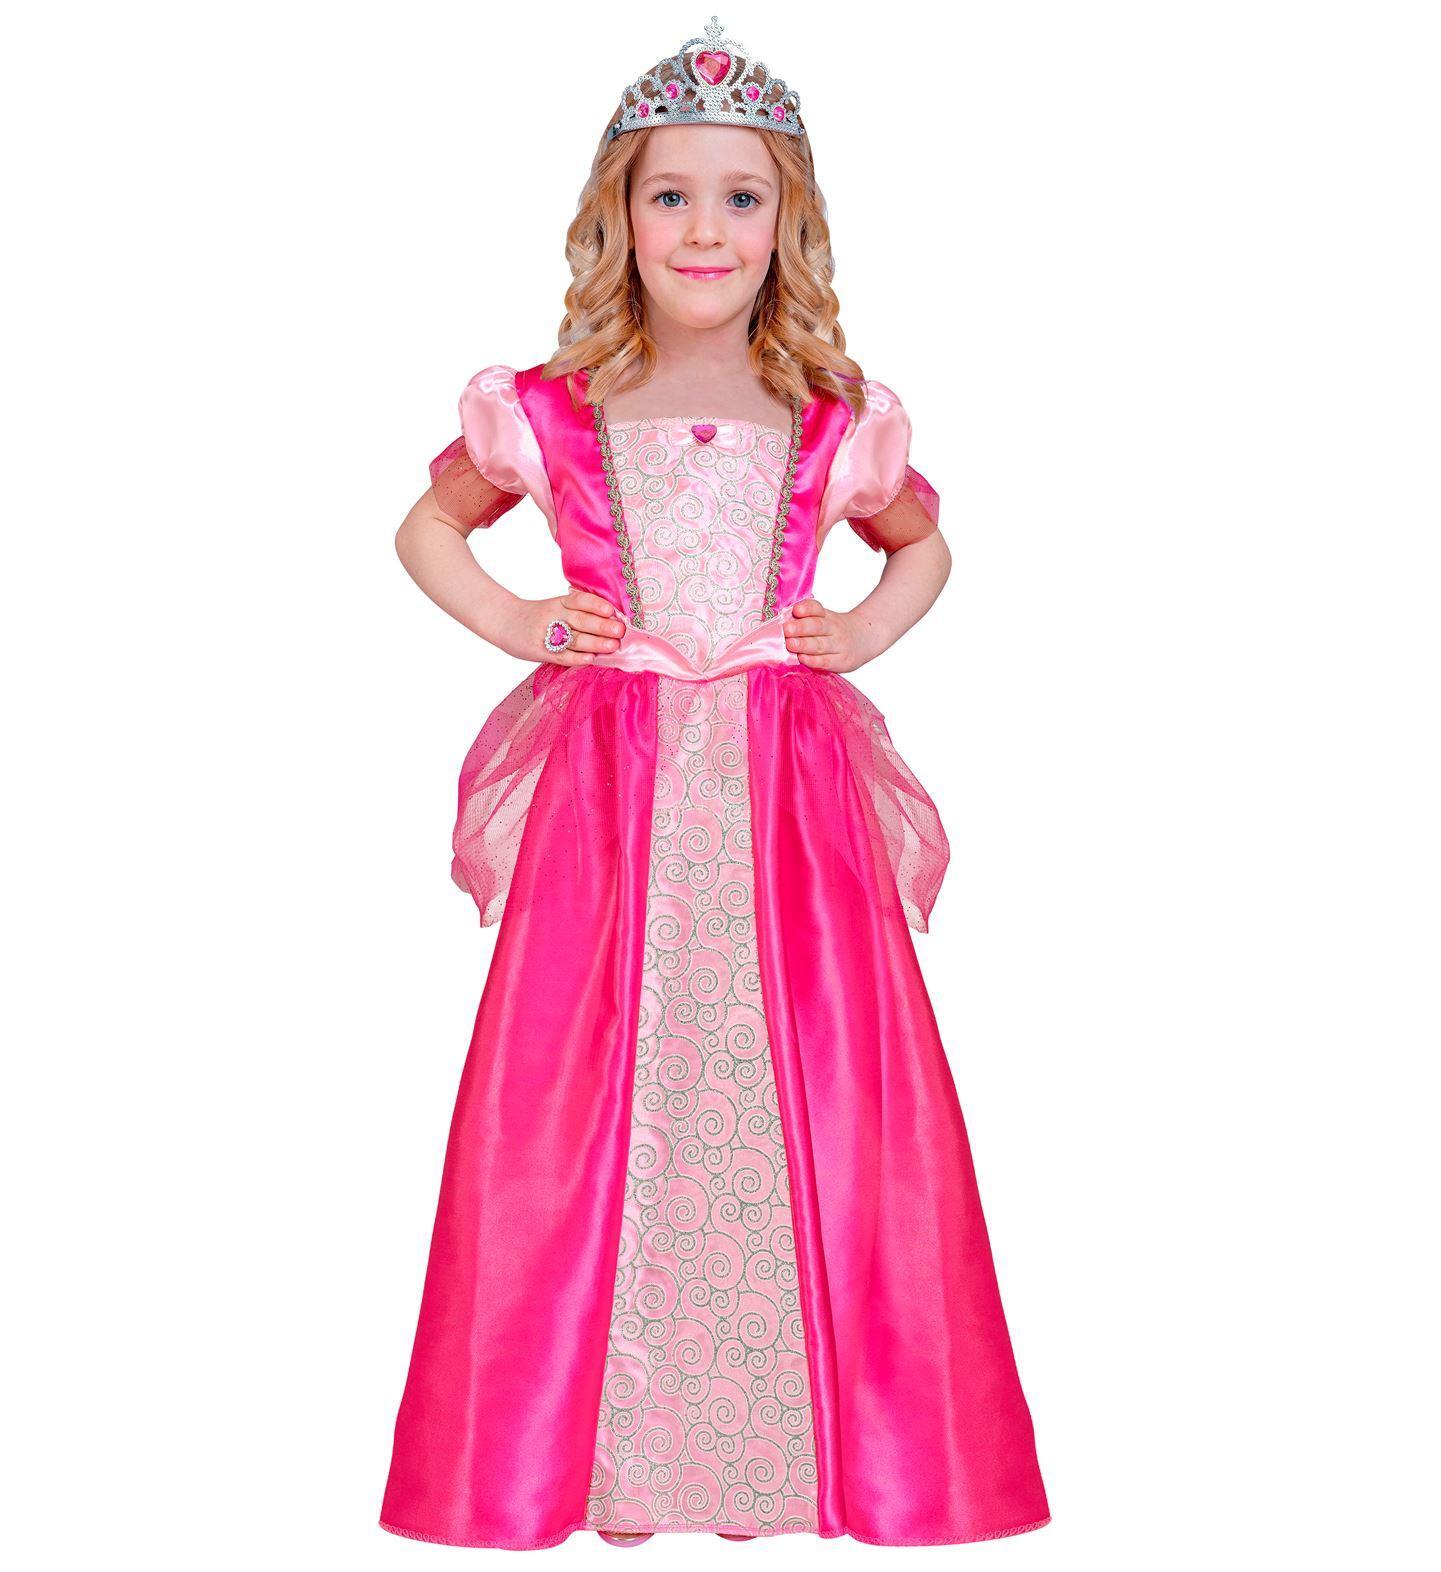 Koninklijk elegante verbluffende prinsessen jurk in het roze voor een kleine prinses